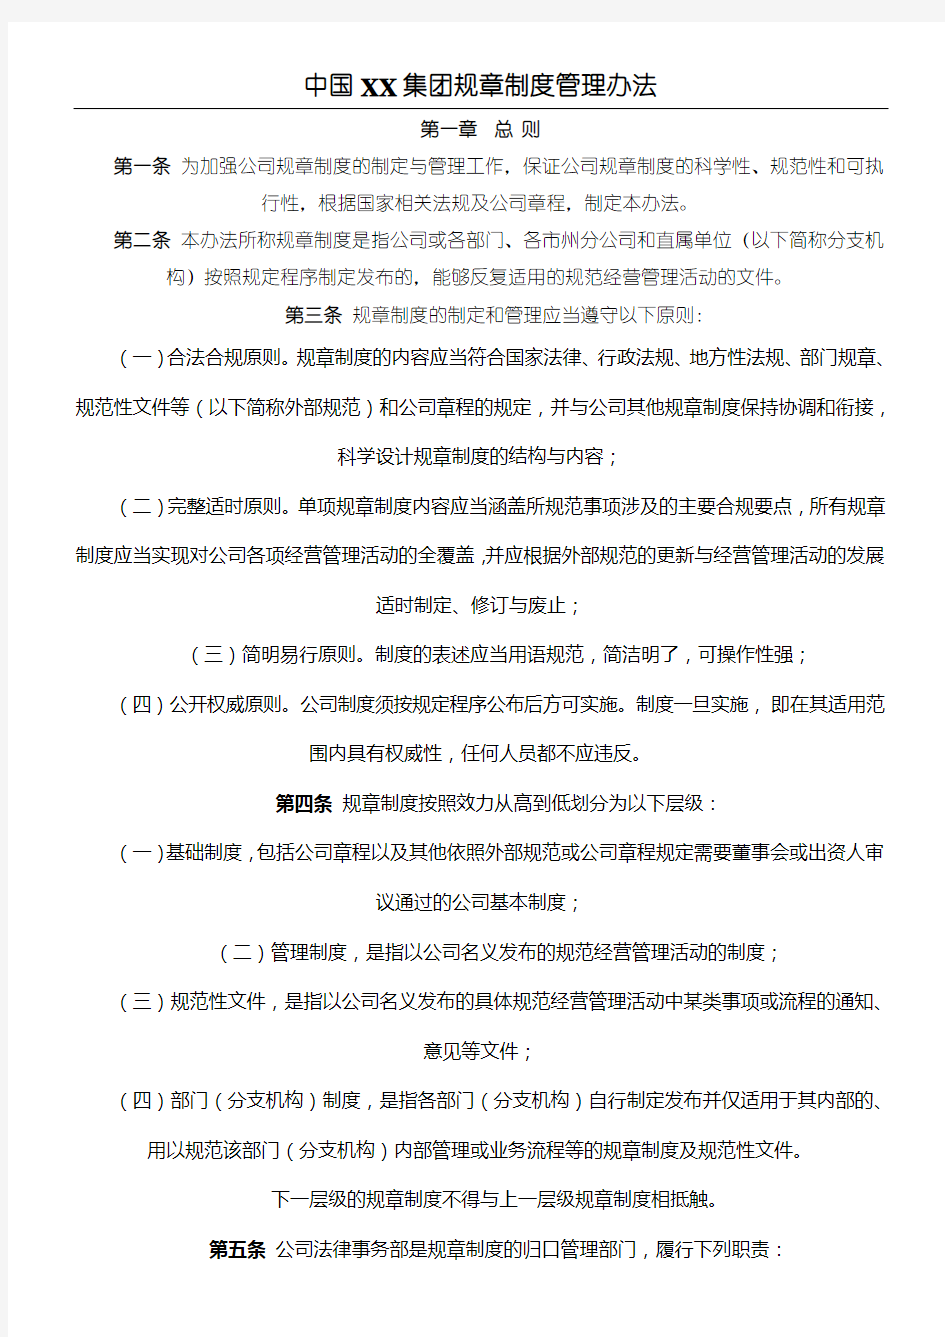 中国集团规章制度流程管理办法